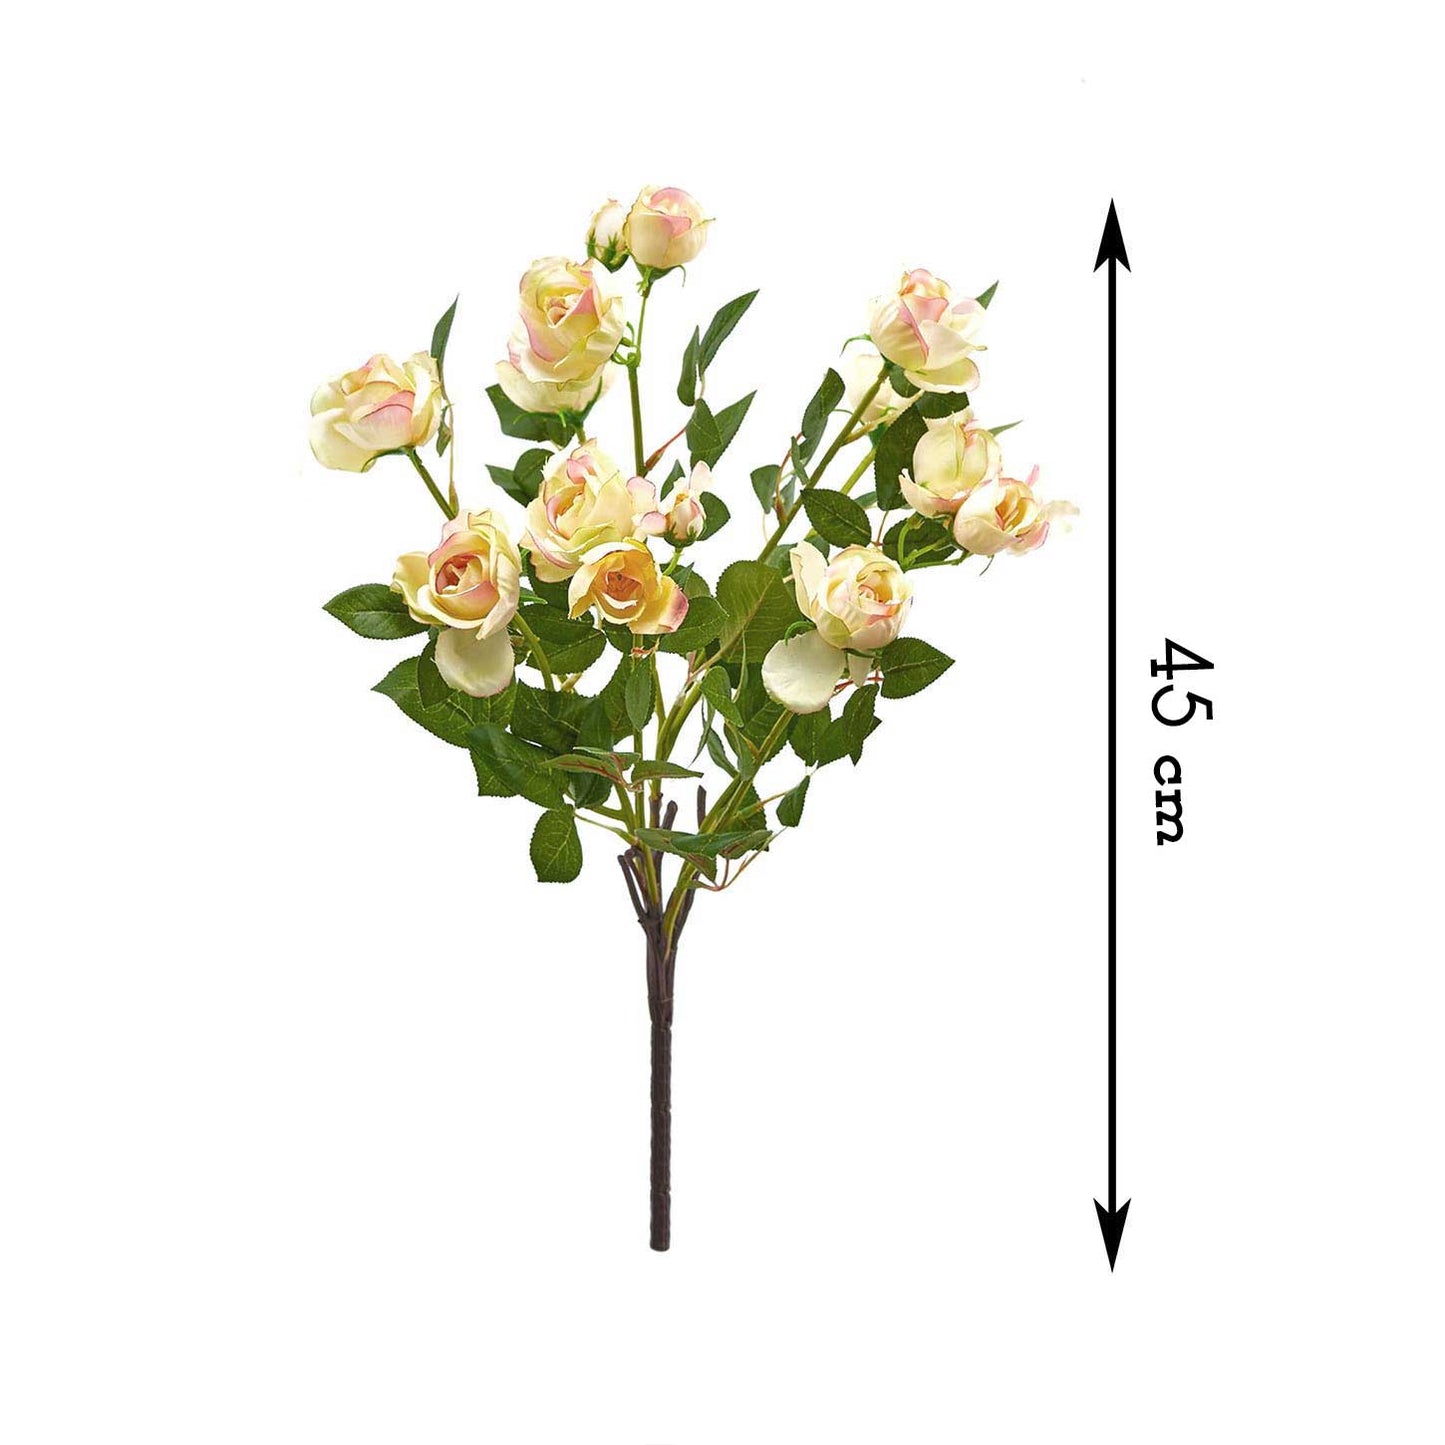 Bouquet 12 Rose Artificiali in Seta Stile Shabby Chic Colore Avorio / Rosa